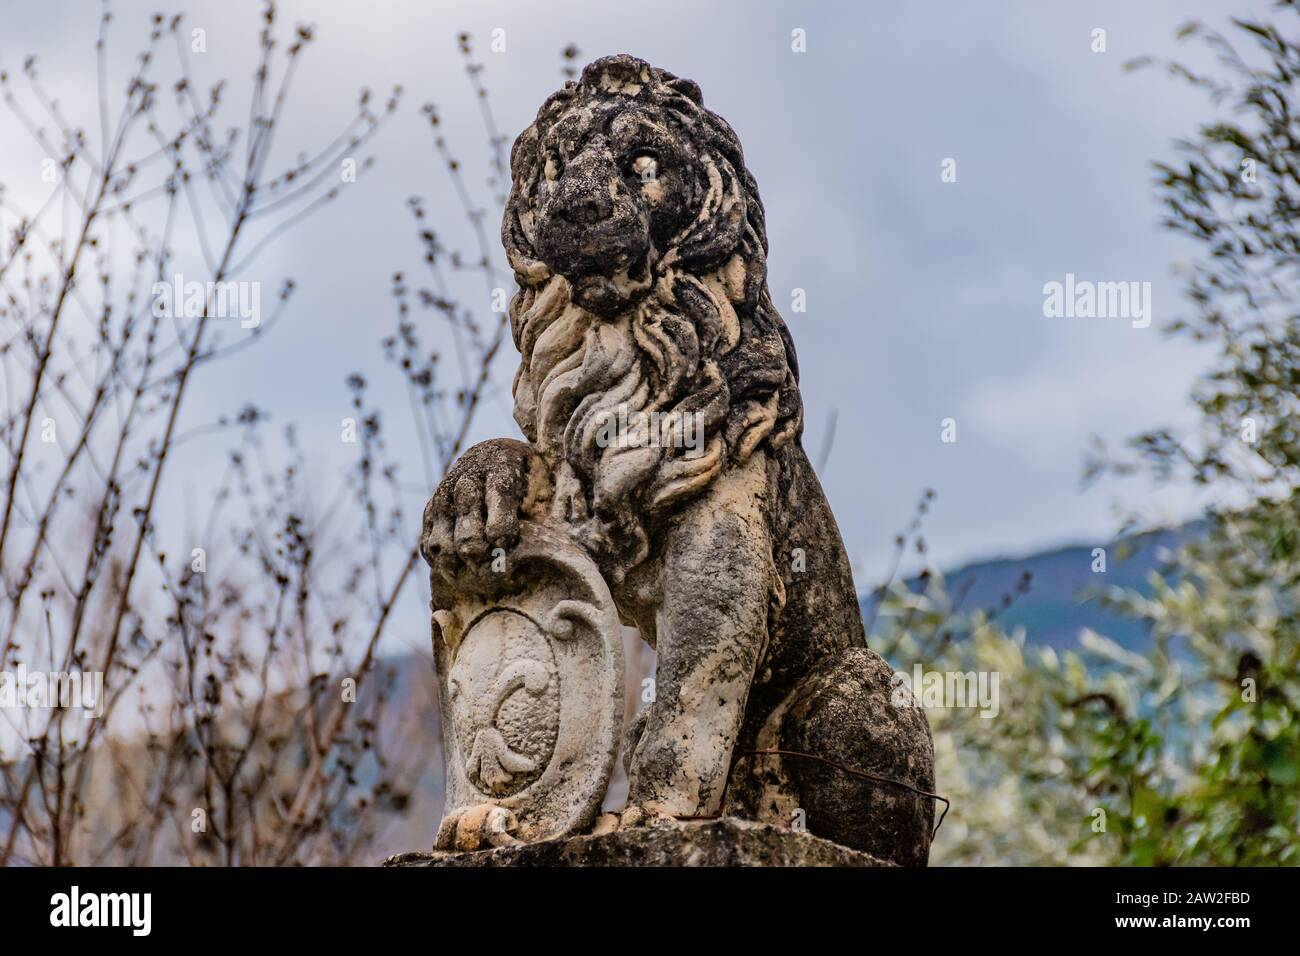 Puget-Theniers, France - January 23, 2020: A statue of a lion holding the 'fleur-de-lis' emblem ('fleur-de-lys'; Iris versicolor) Stock Photo